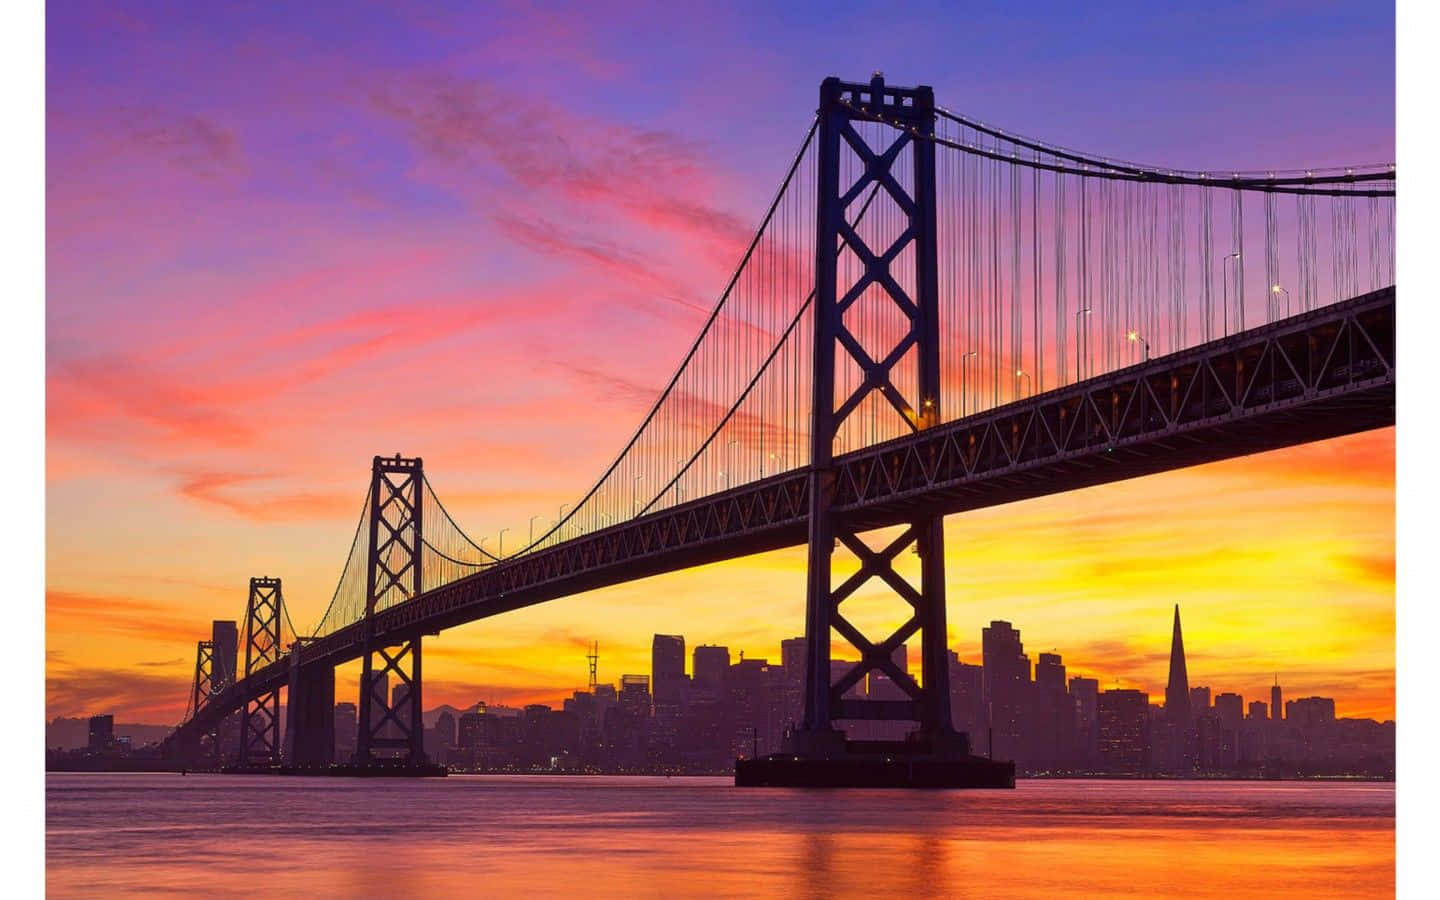 Goldengate Bridge Bei Sonnenuntergang - Das Beste Hintergrundbild Für San Francisco